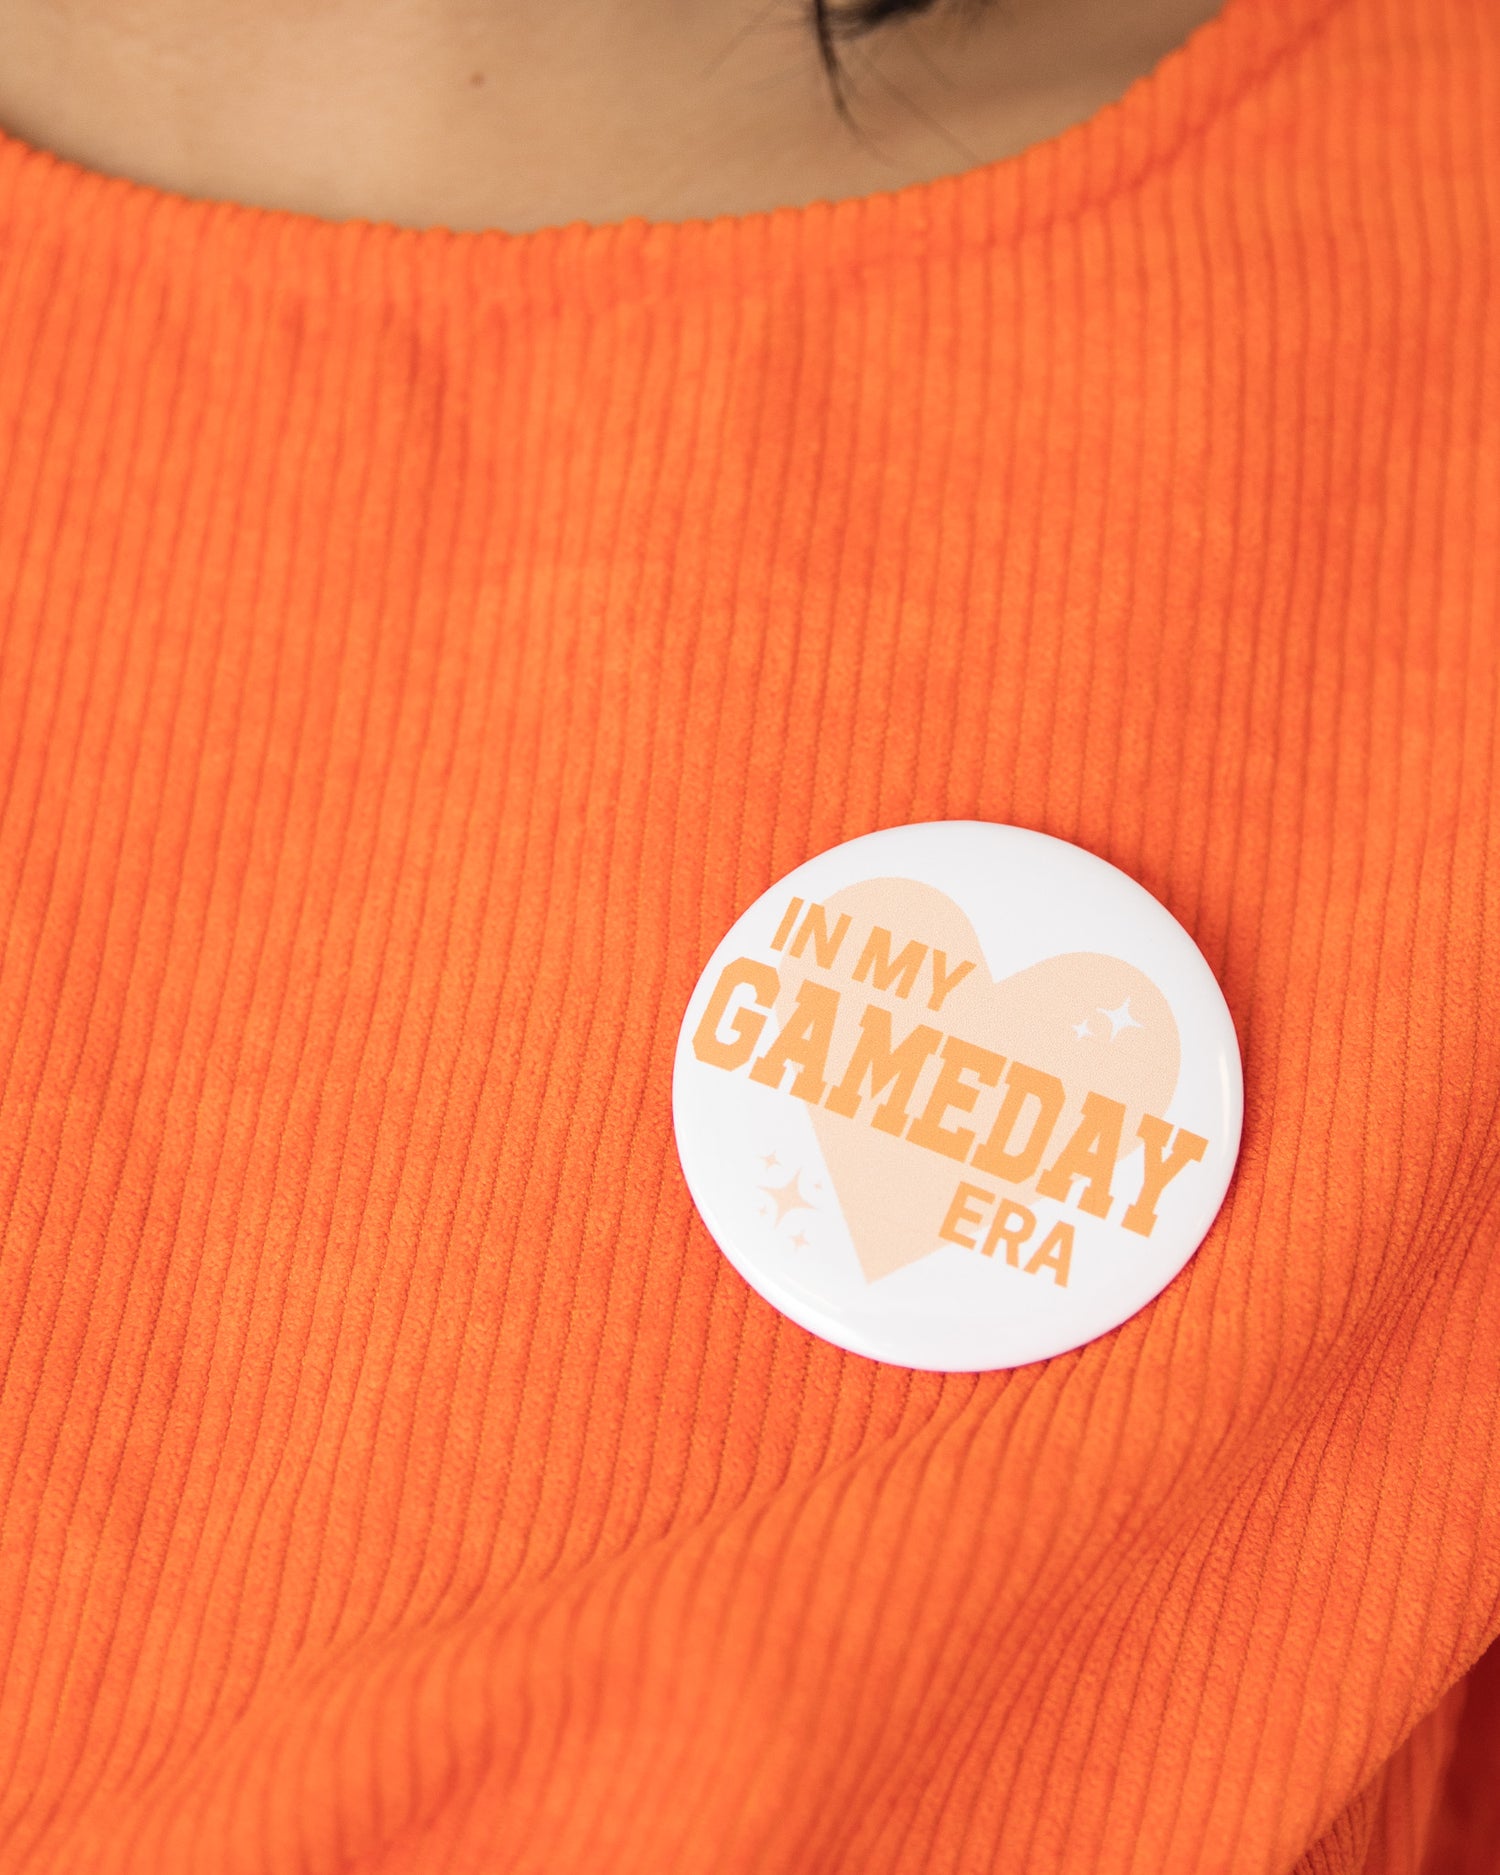 Gameday Era Button Pin